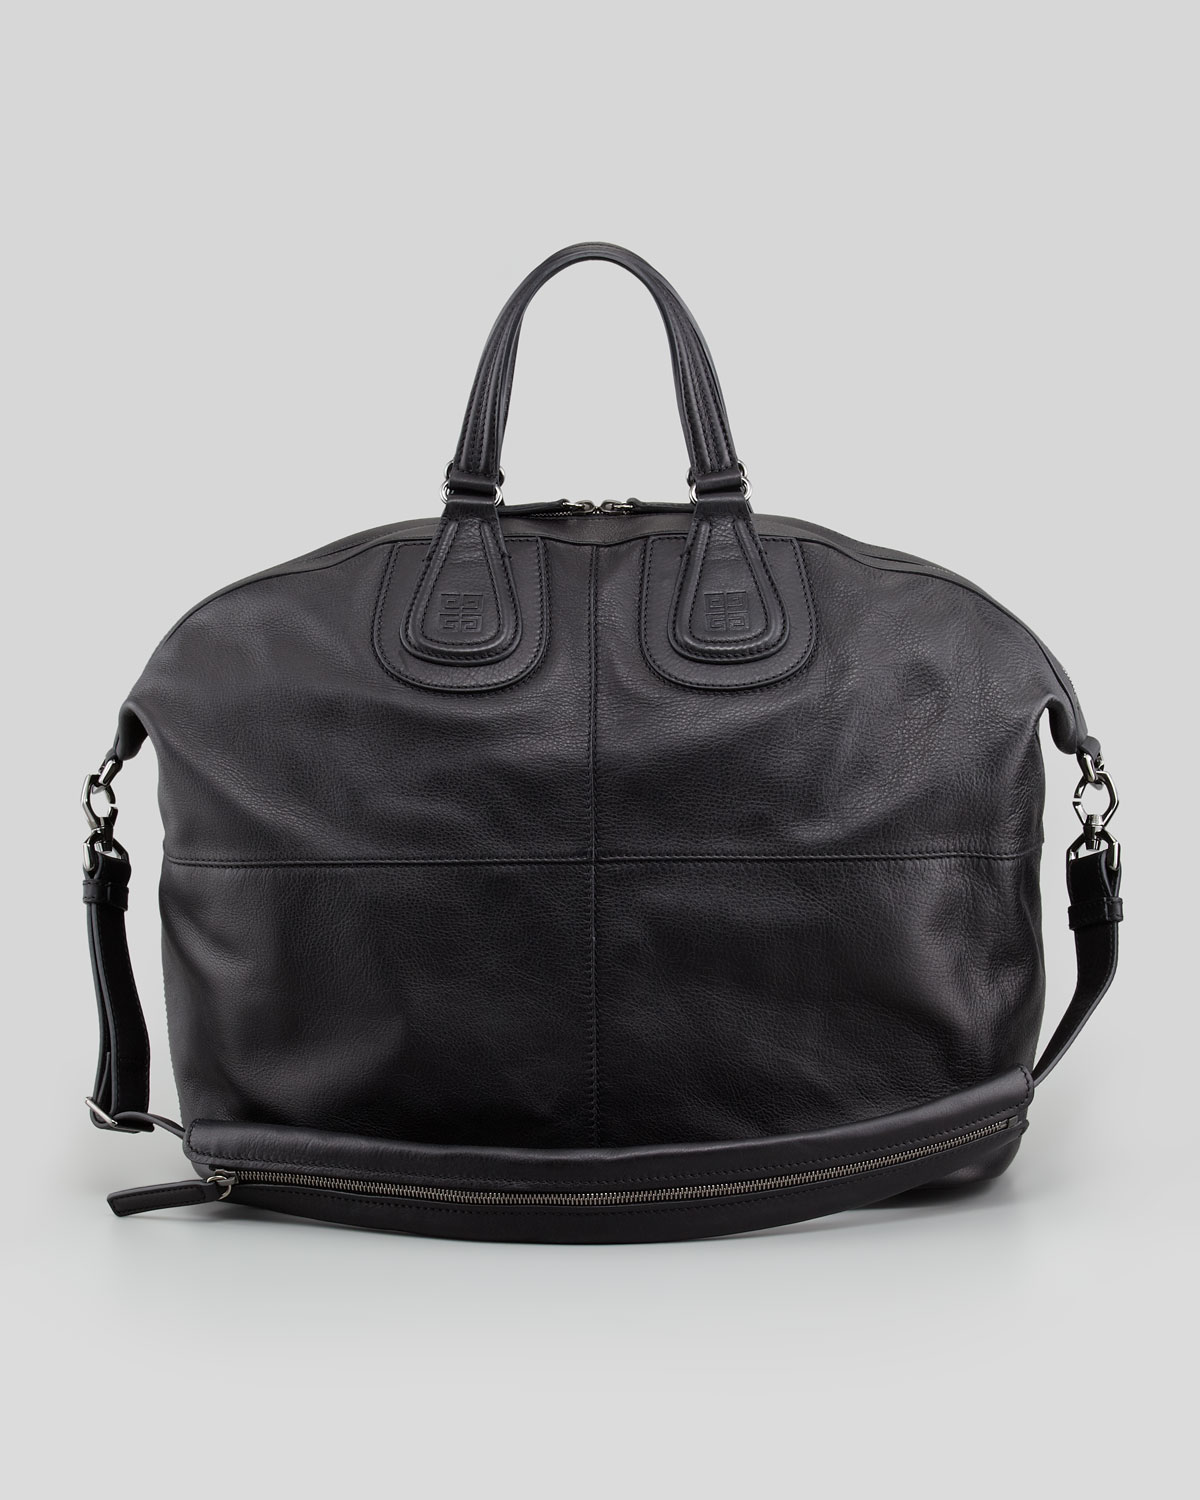 Givenchy Nightingale Mens Large Leather Shoulder Bag Black for Men - Lyst